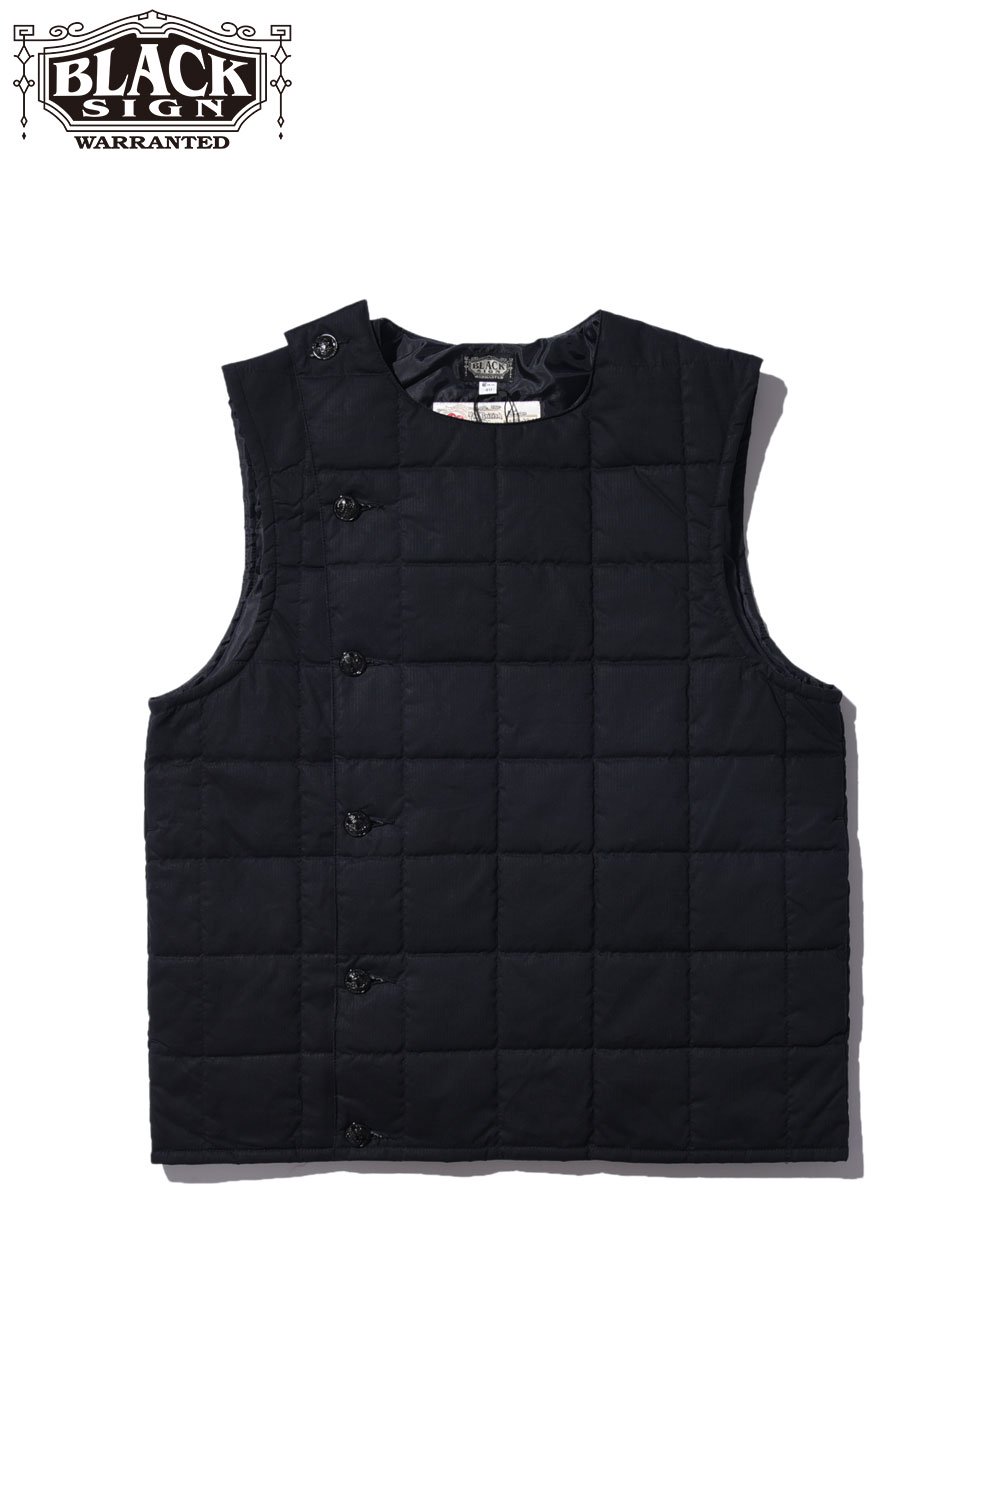 BLACK SIGN(ブラックサイン) スウィンドラーベスト Waxed Cotton Swindler Warm Vest  BSFV-22202BLK 通販正規取扱 | ハーレムストア公式通販サイト